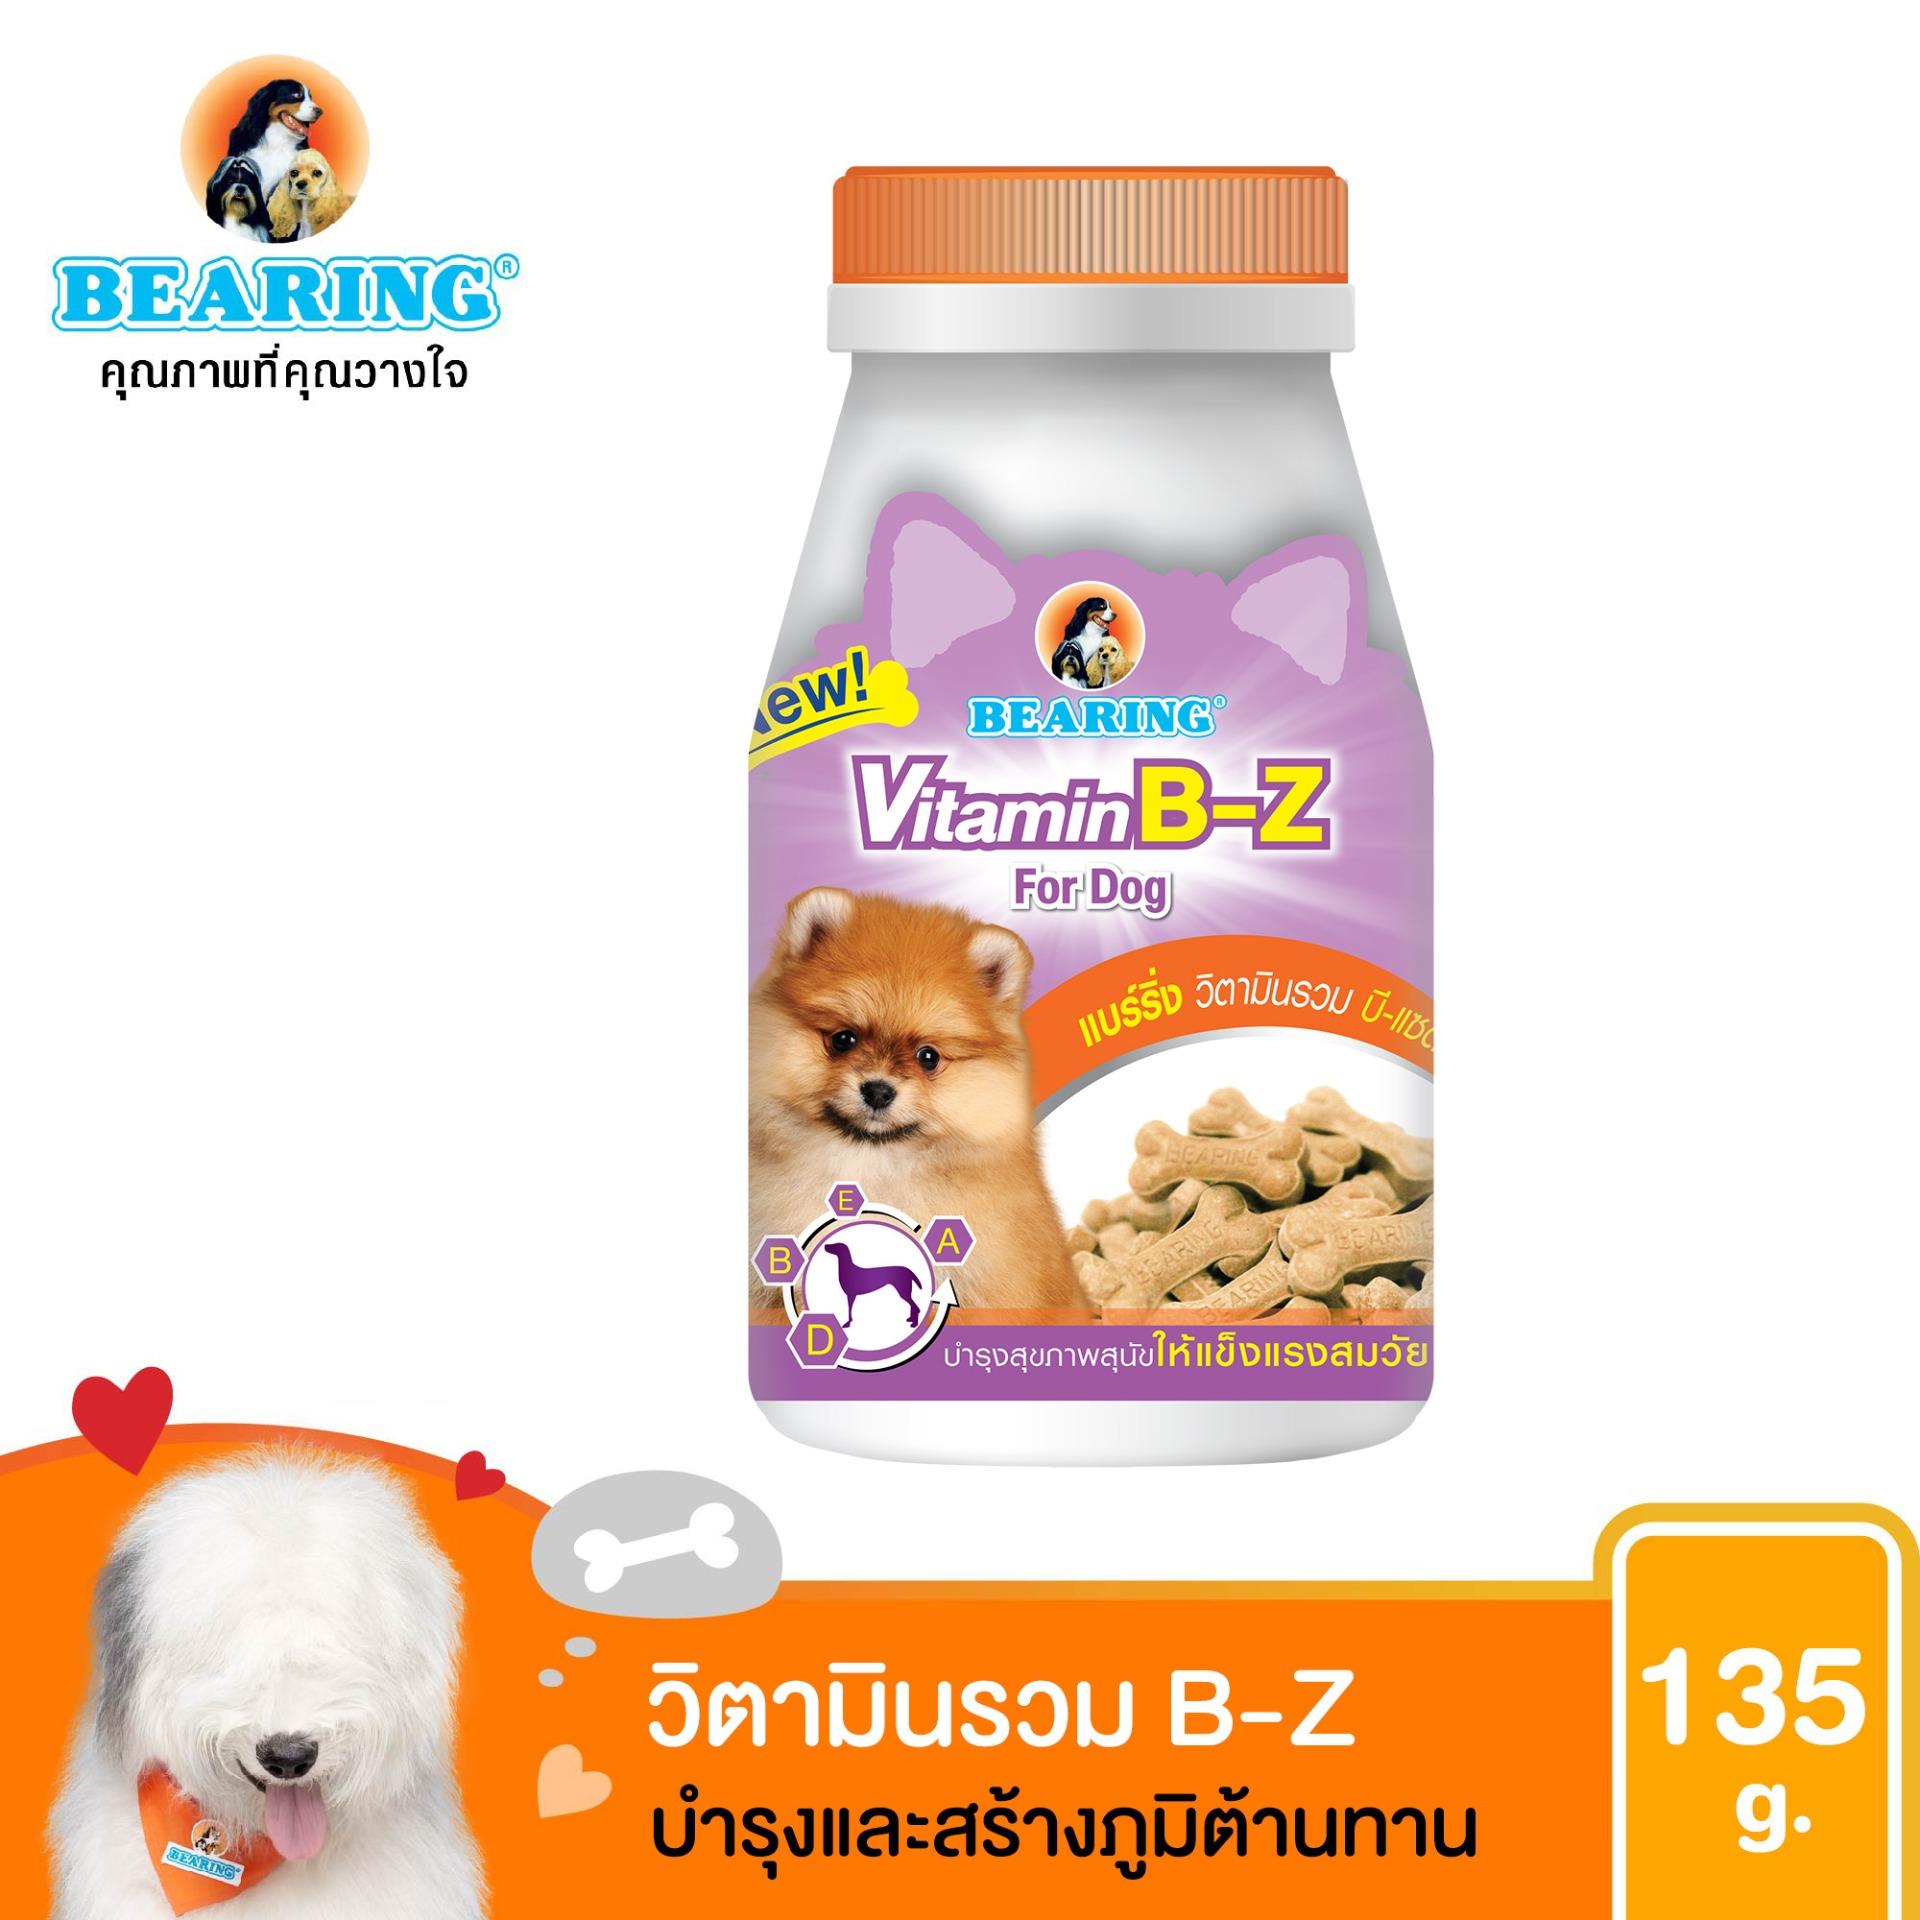 วิตามินสุนัข อาหารเสริม สร้างภูมิต้านทาน สุขภาพแข็งแรง BEARING Supplement Vitamin B-Z 135 g.